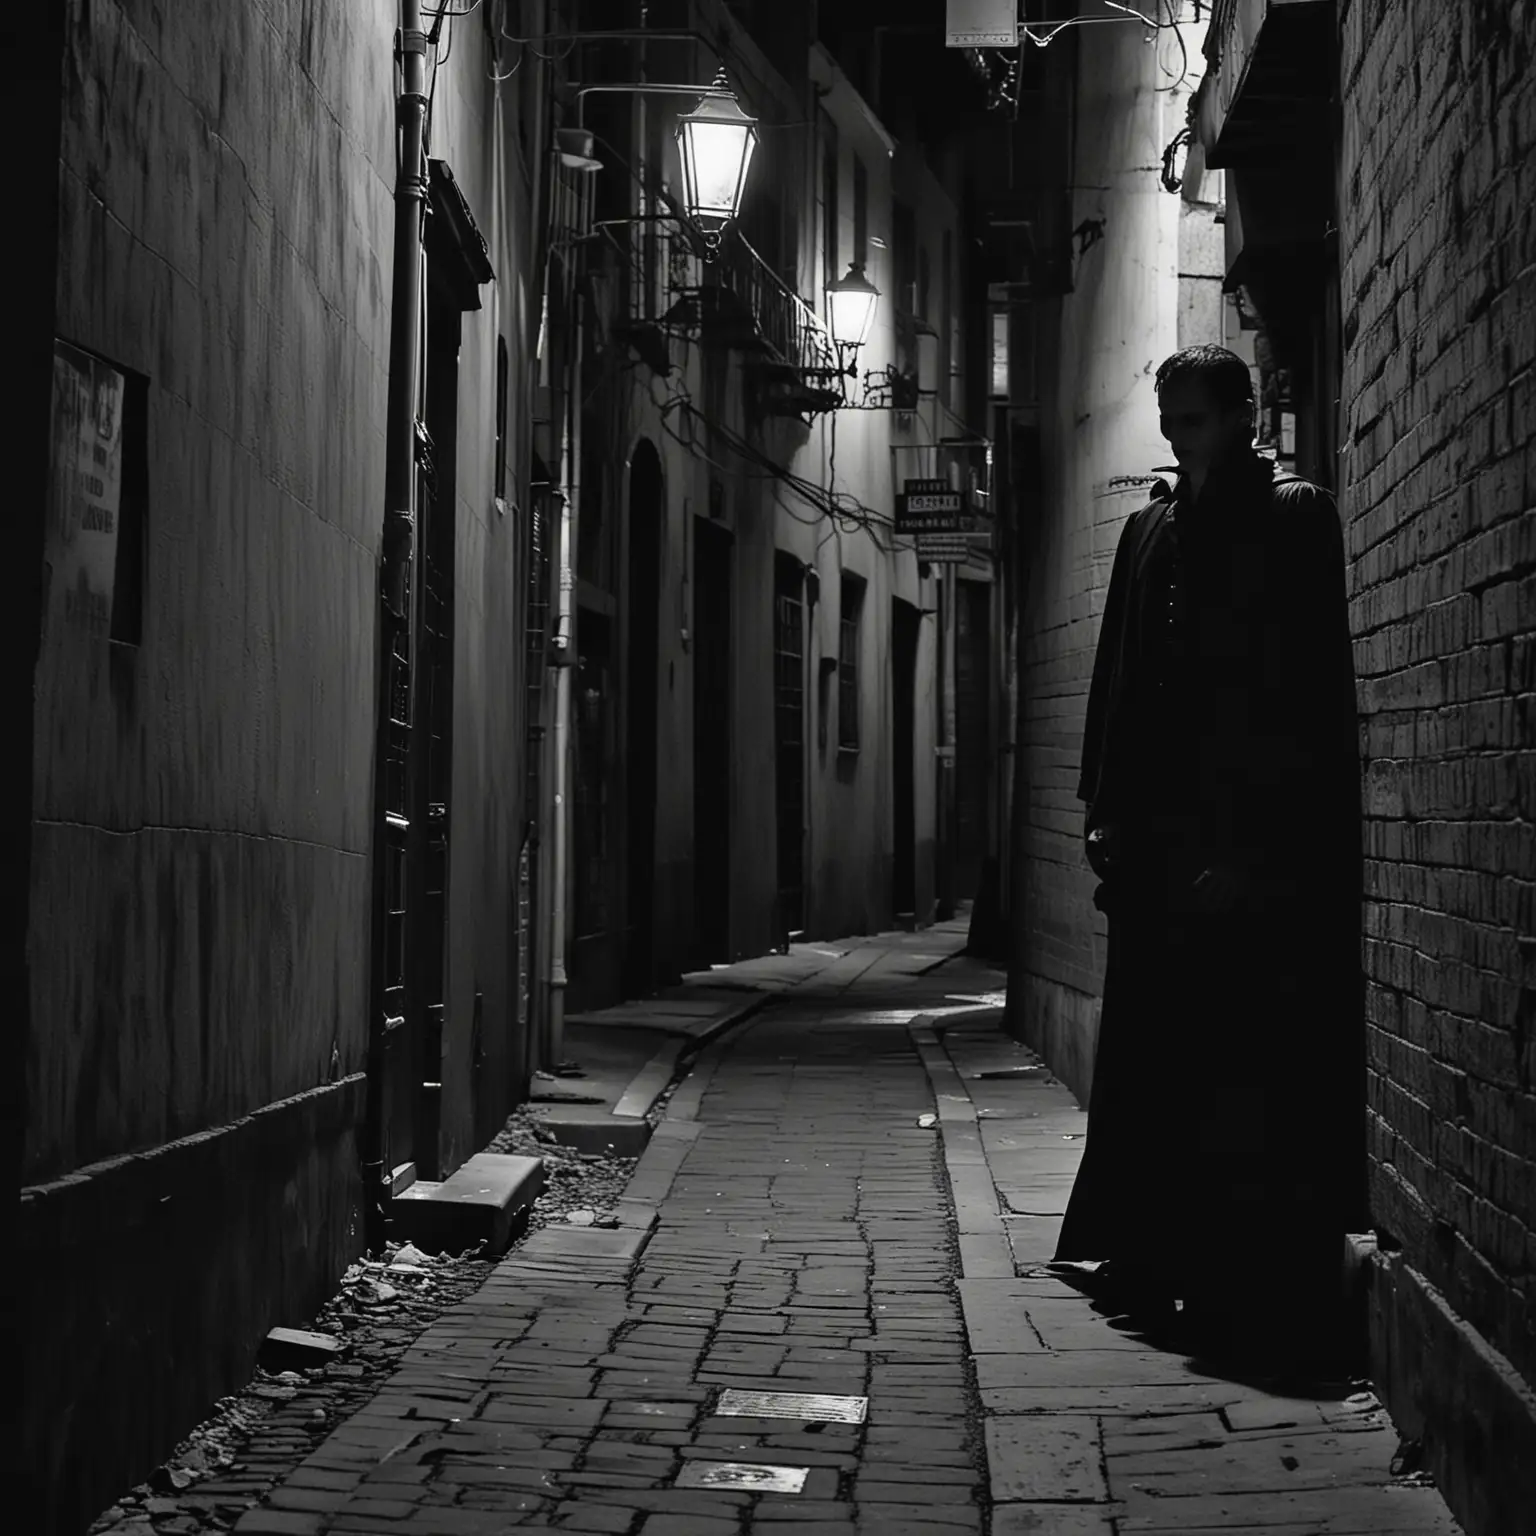 Shadowy Vampire Lurking in Urban Alleyway